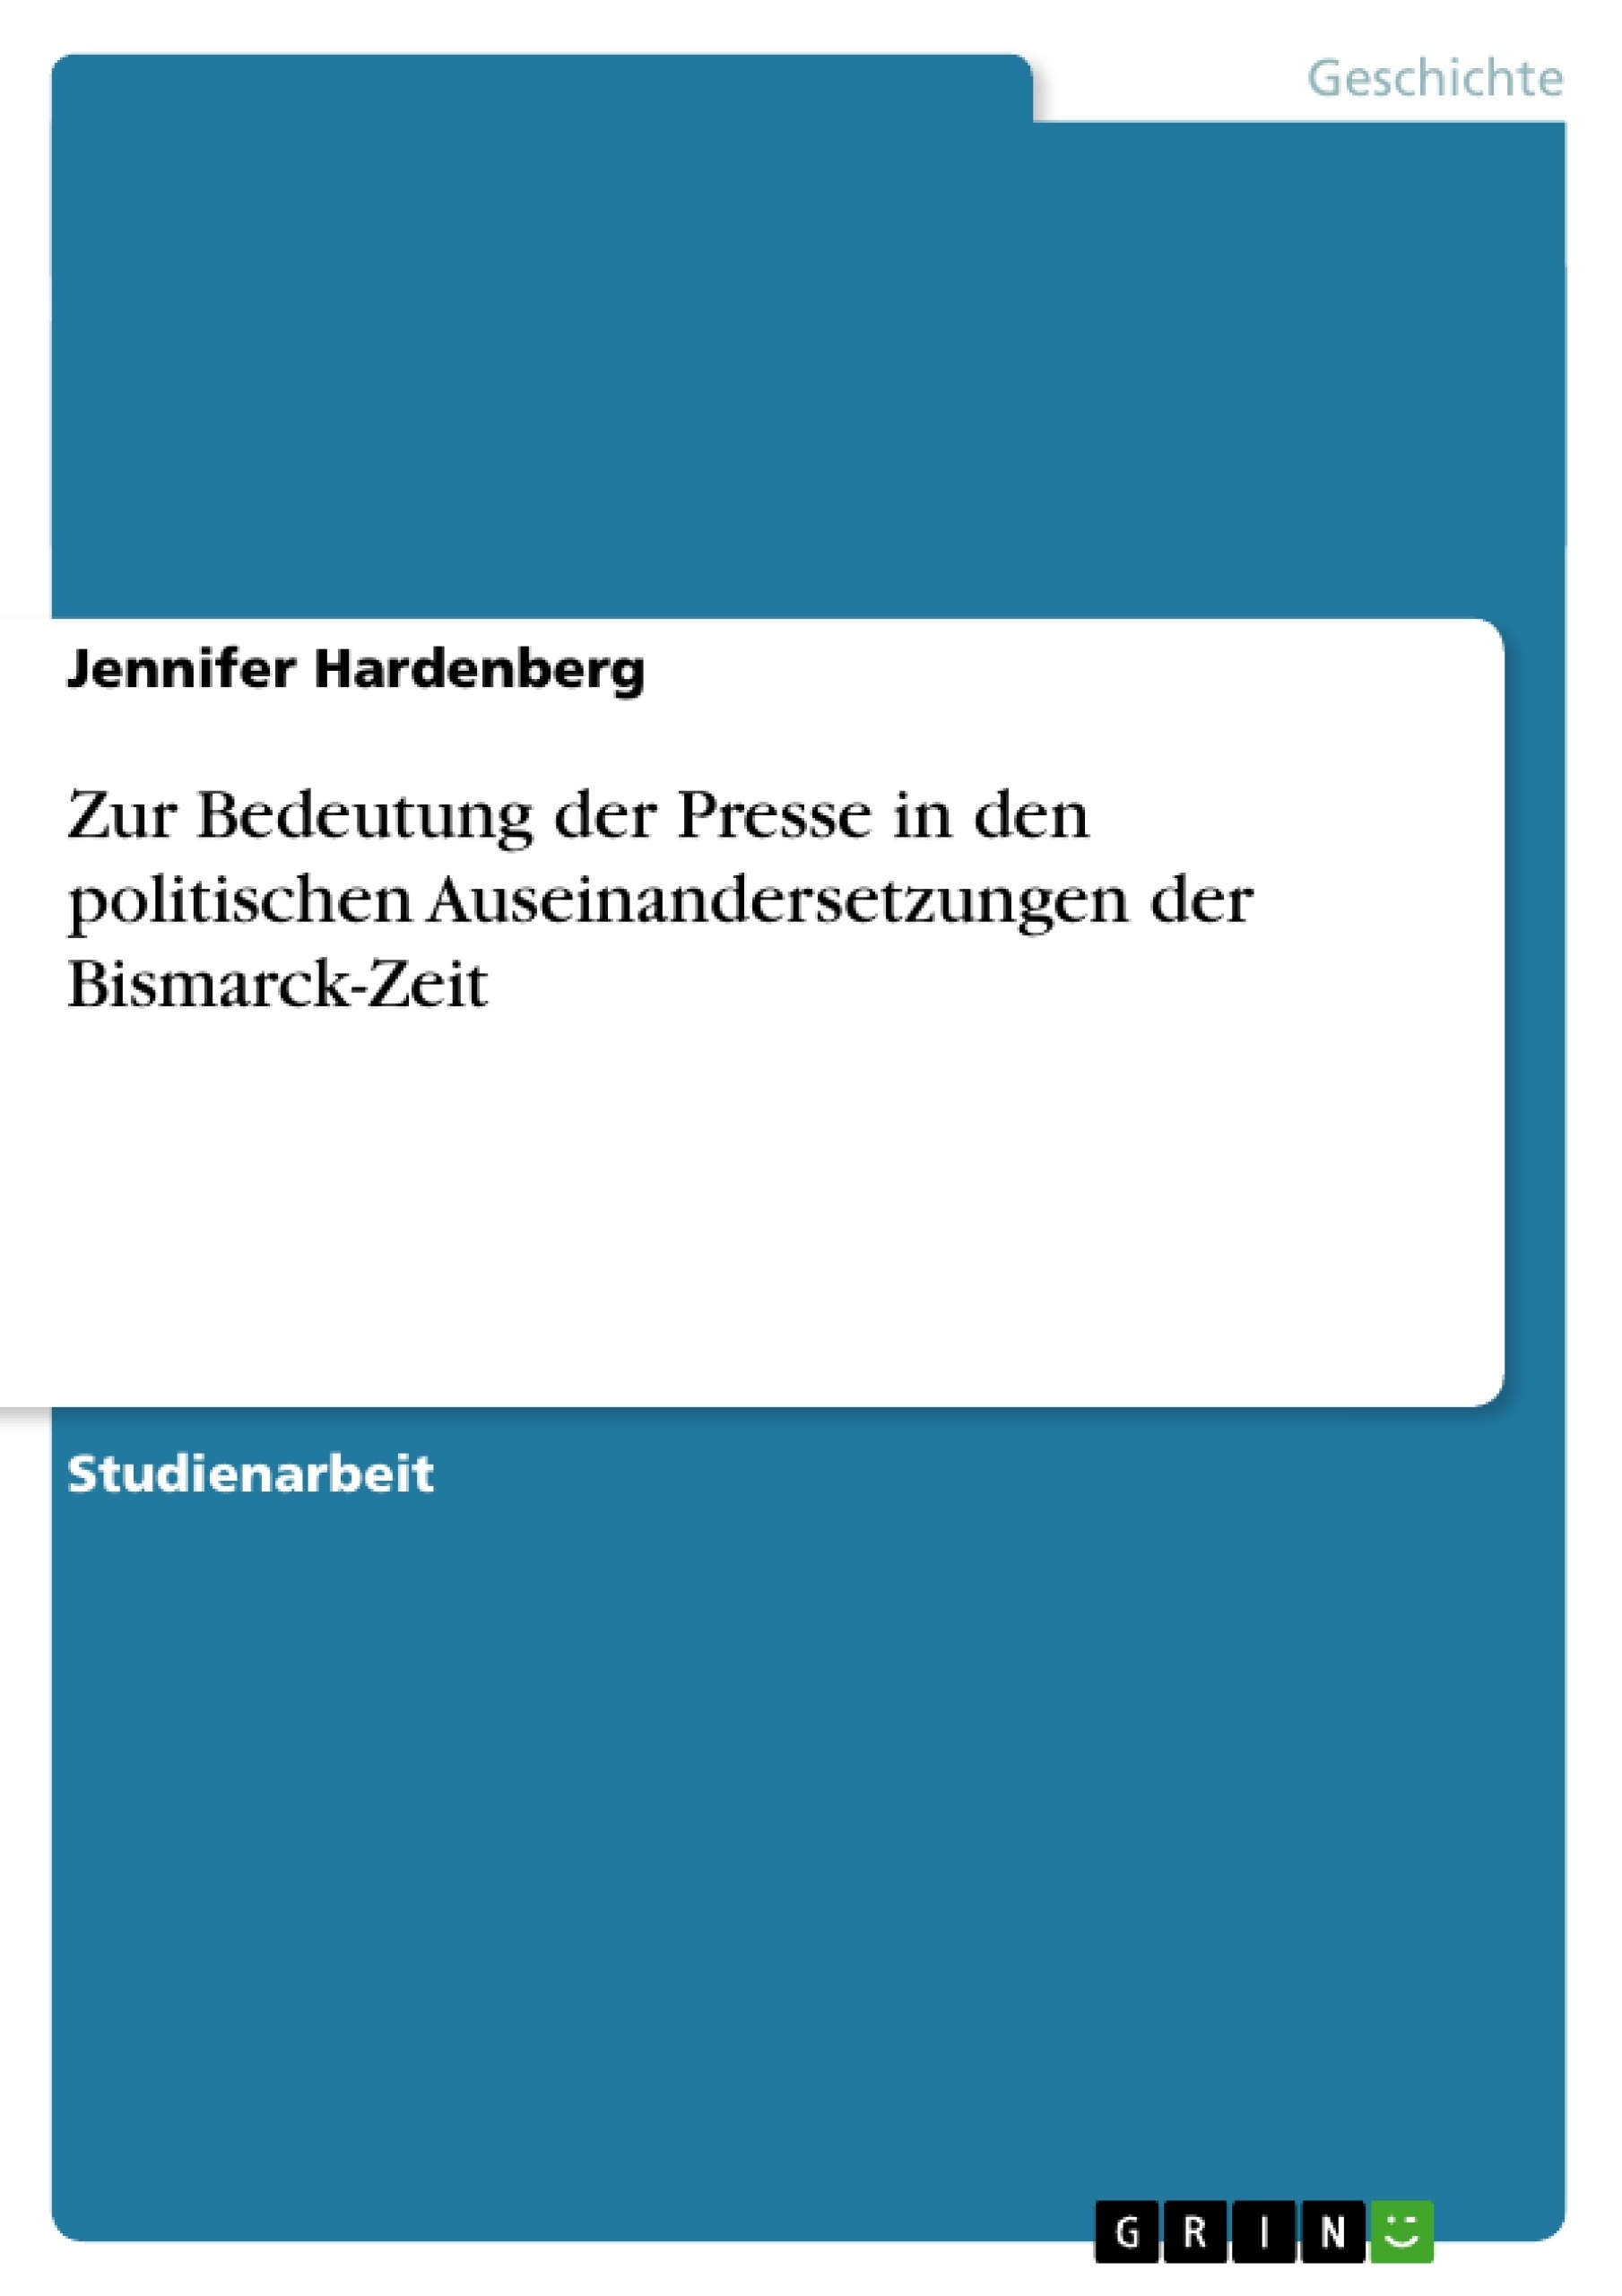 Title: Zur Bedeutung der Presse in den politischen Auseinandersetzungen der Bismarck-Zeit